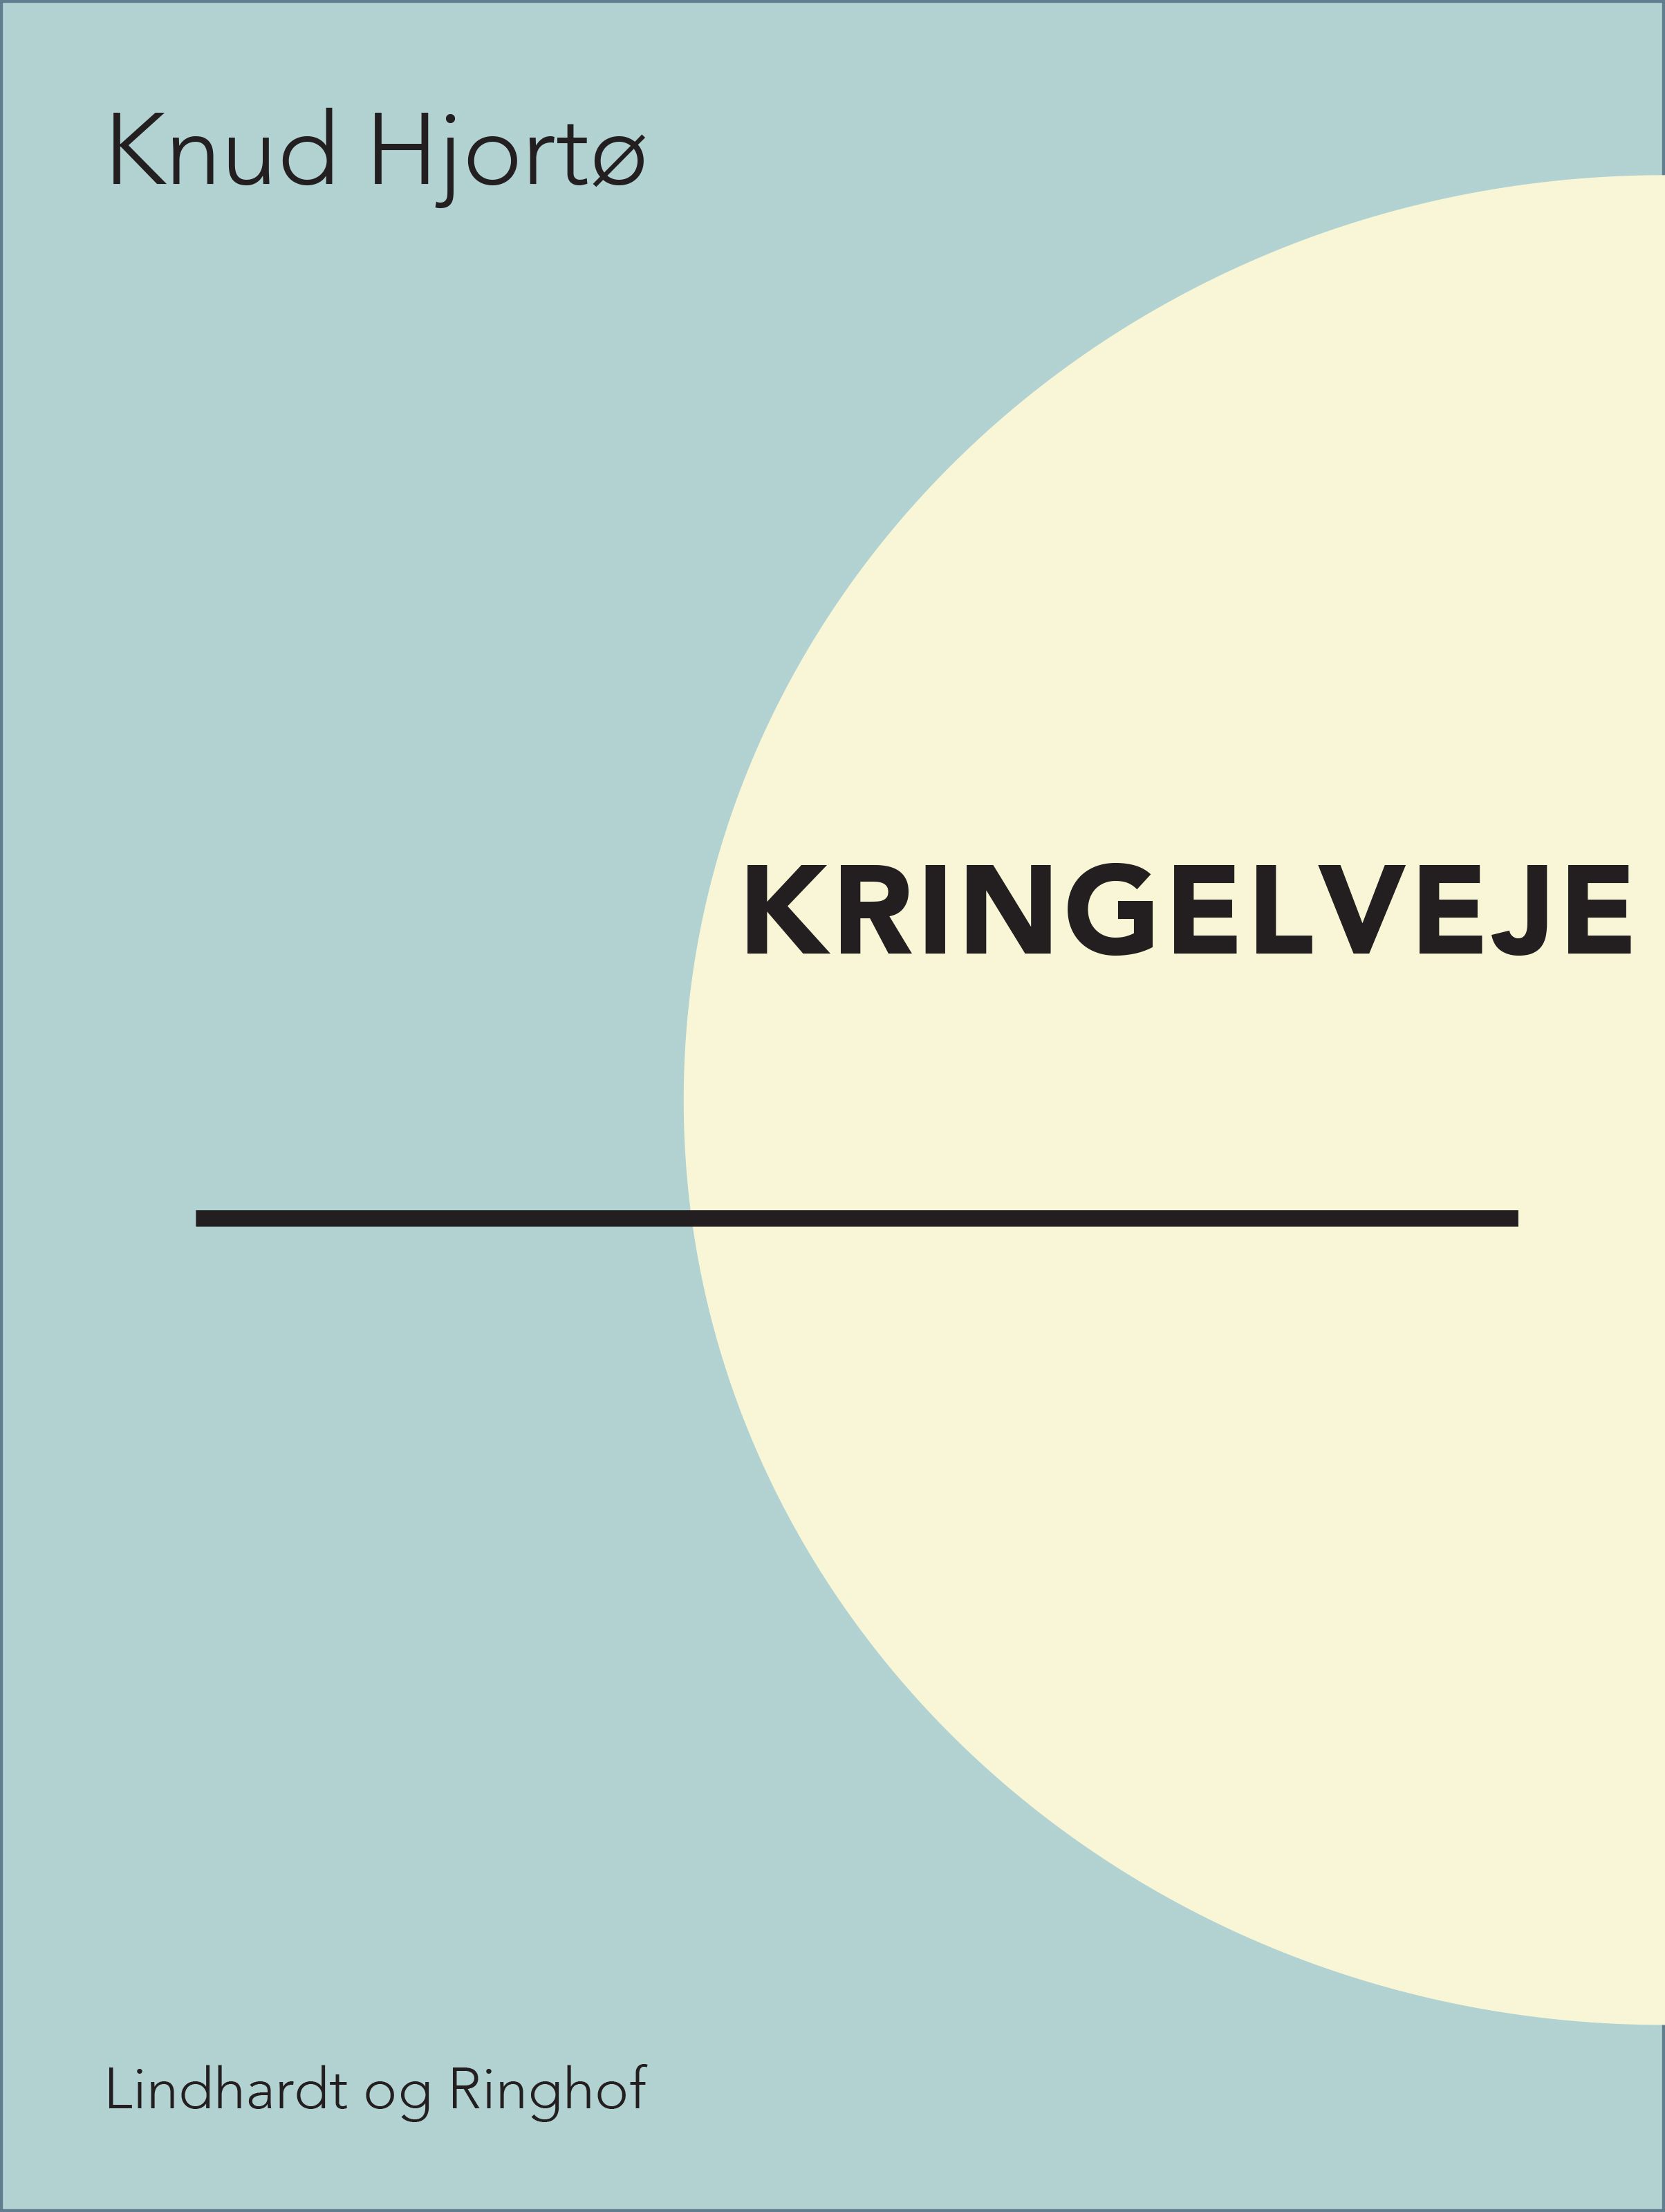 Kringelveje, e-bog af Knud Hjortø